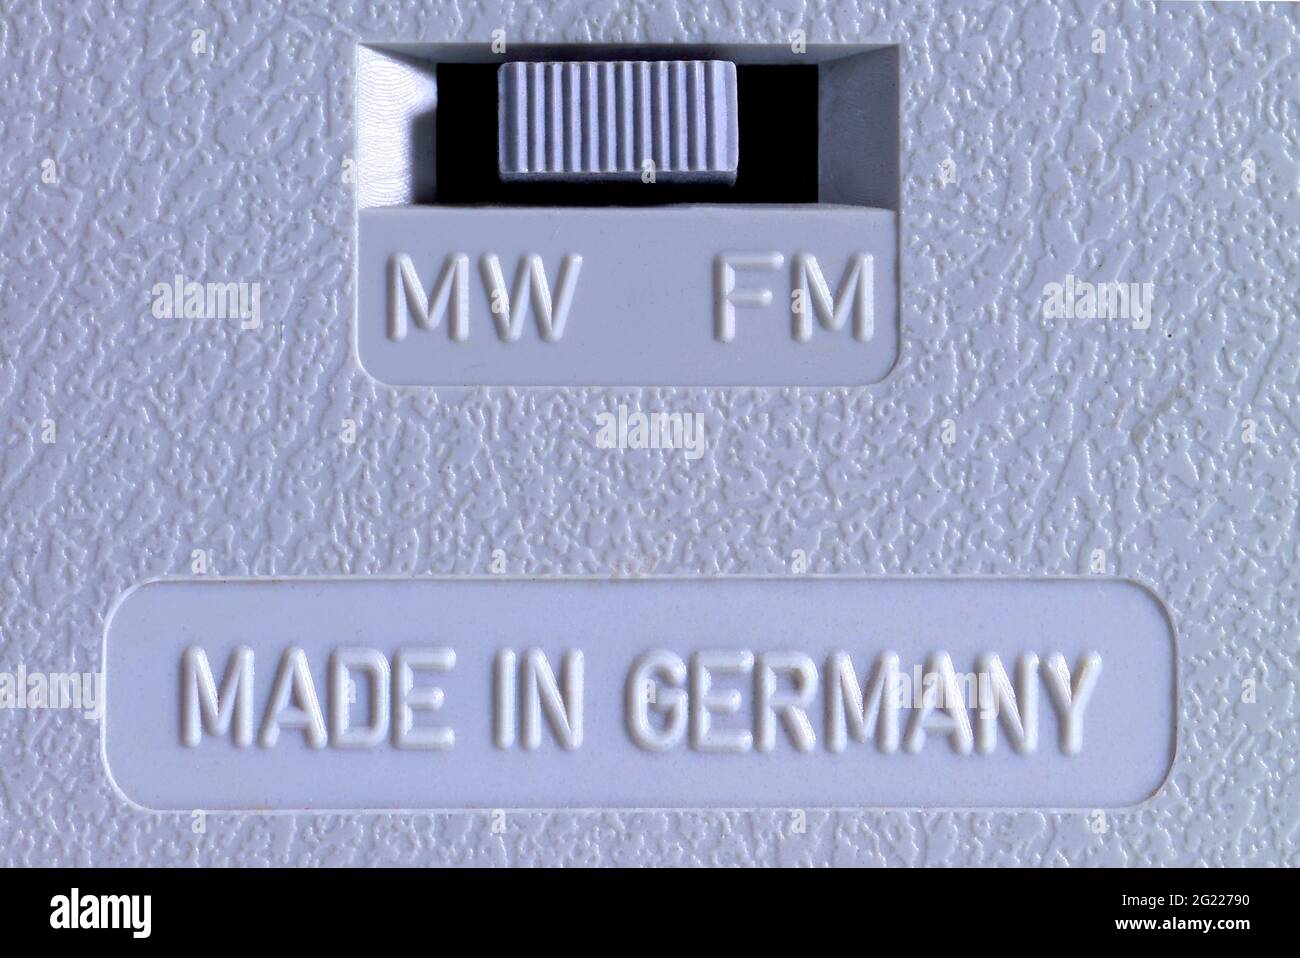 Radiodiffusione, radio, tecnica, immagine di simbolo, made in Germany, Lato opposto di una vecchia radio Siemens, INFORMAZIONI-DIRITTI-DI-AUTORIZZAZIONE-AGGIUNTIVI-NON-DISPONIBILI Foto Stock